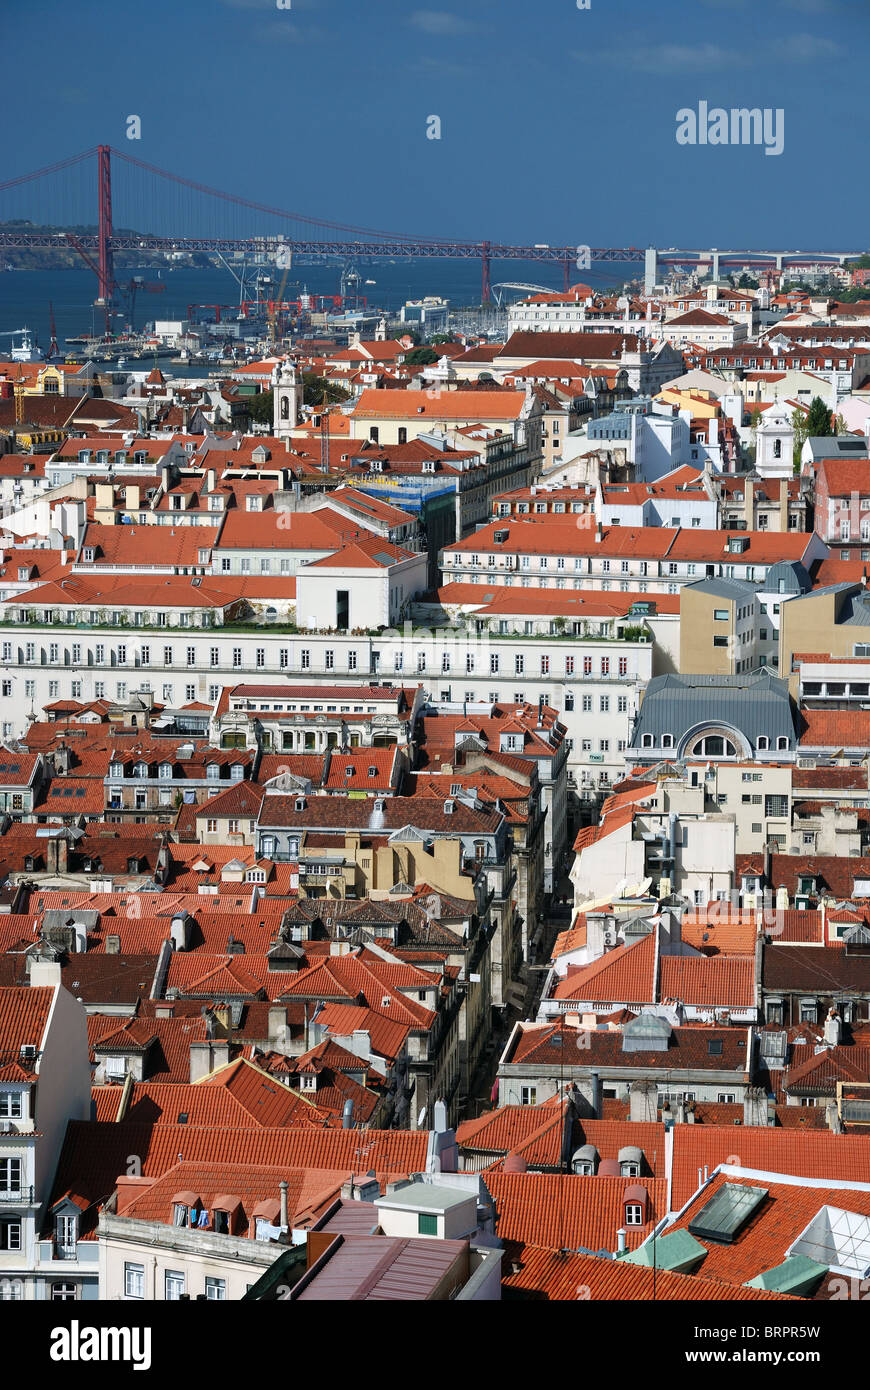 Lisboa - Lisbonne ville vue vue par St George - Château Castelo de São Jorge - Portugal - vue terrasse miradouro Banque D'Images